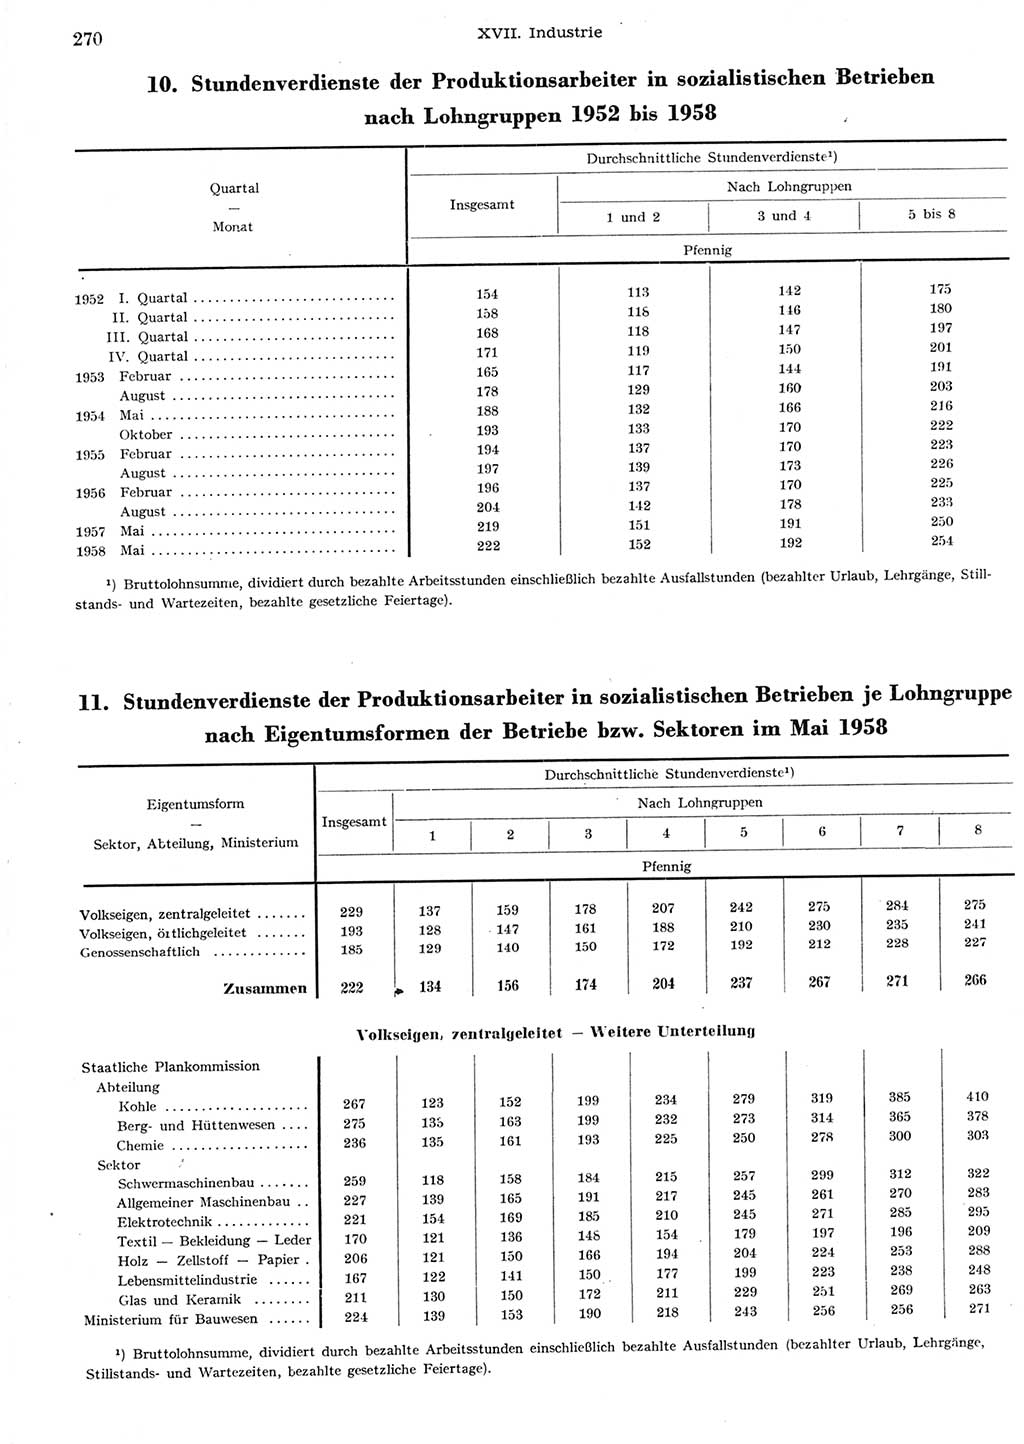 Statistisches Jahrbuch der Deutschen Demokratischen Republik (DDR) 1958, Seite 270 (Stat. Jb. DDR 1958, S. 270)